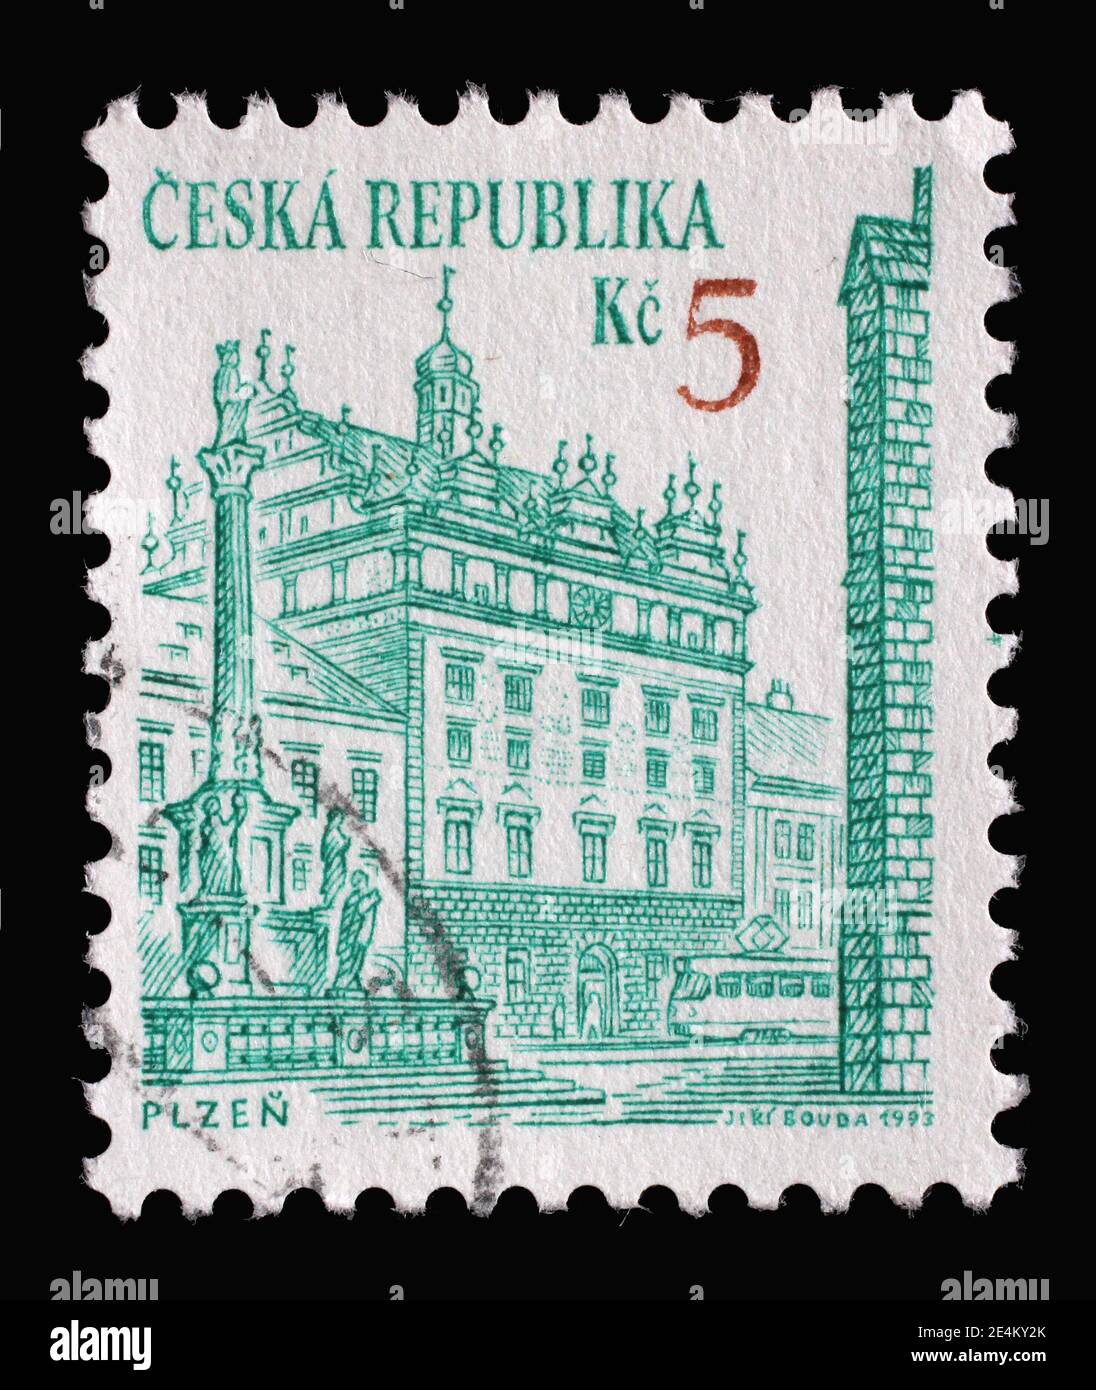 Timbre imprimé en République tchèque montre la mairie de la Renaissance à Plzen, vers 1993 Banque D'Images